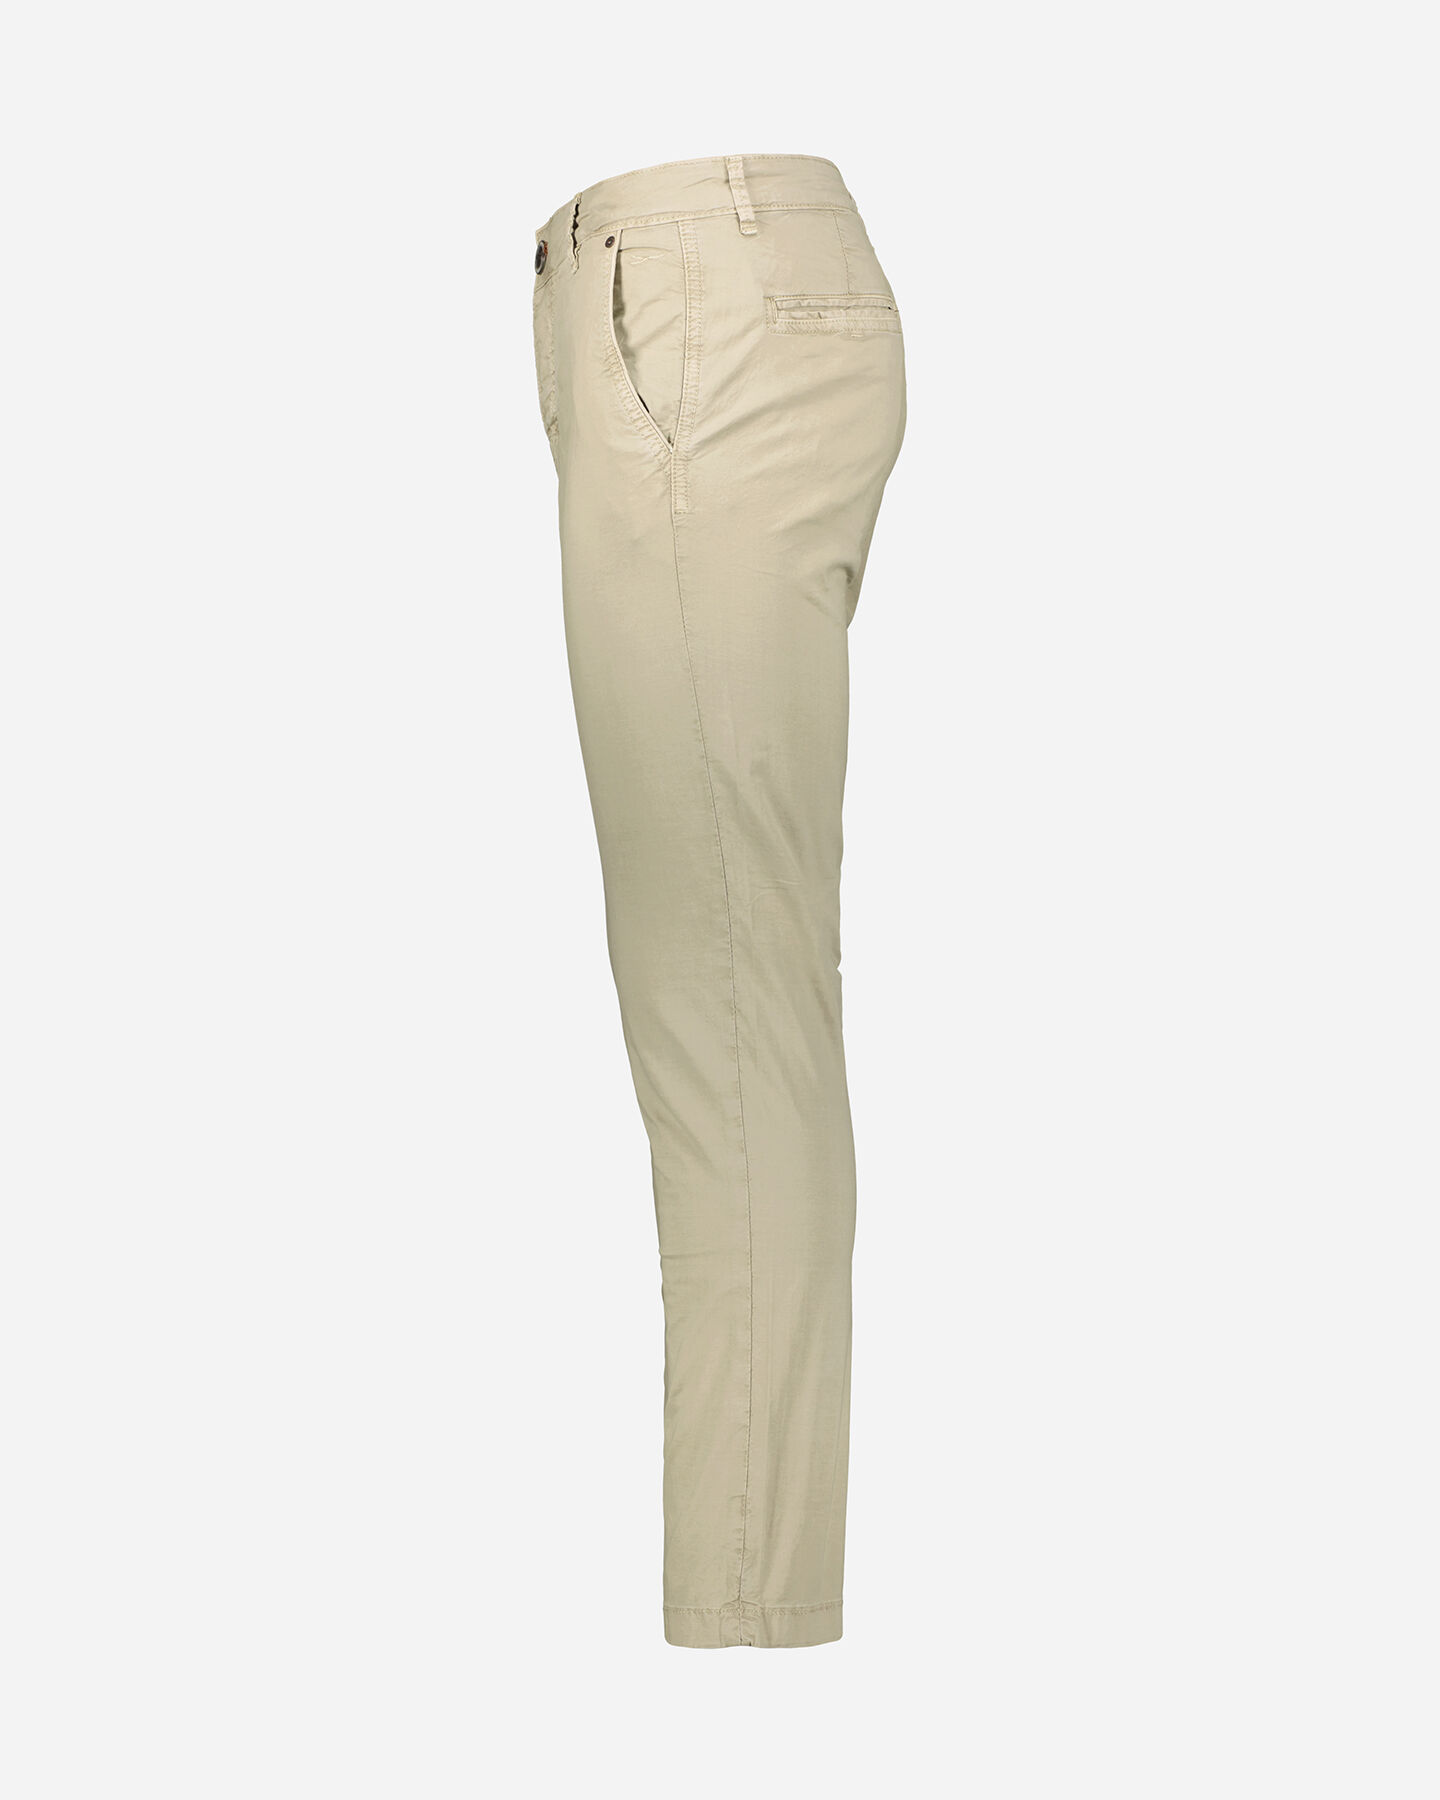  Pantalone COTTON BELT CHINO M S4115863|7|30 scatto 1